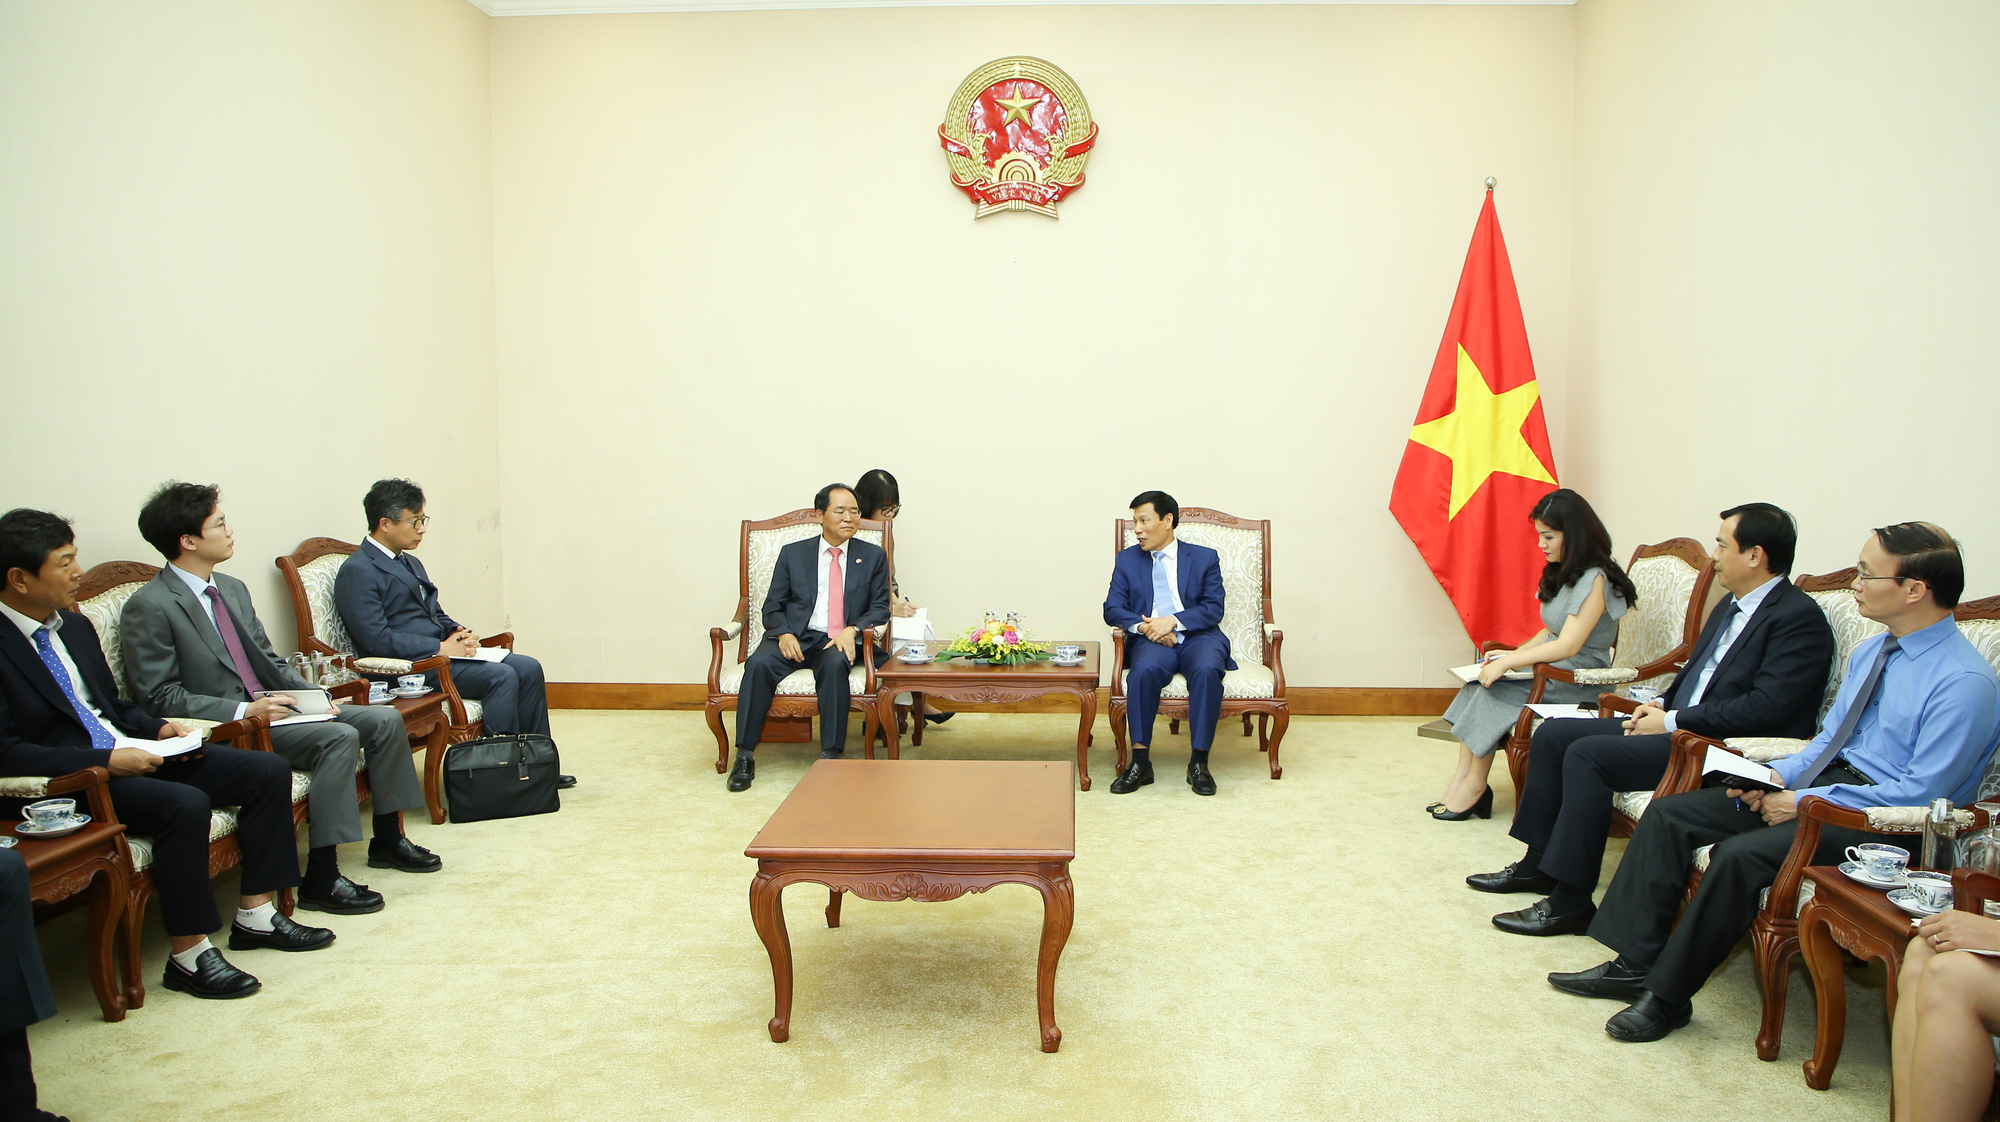 Bộ trưởng Nguyễn Ngọc Thiện: Việt Nam- Hàn Quốc tái khởi động mạnh mẽ các chương trình hợp tác văn hóa, thể thao và du lịch sau dịch Covid-19 - Ảnh 2.